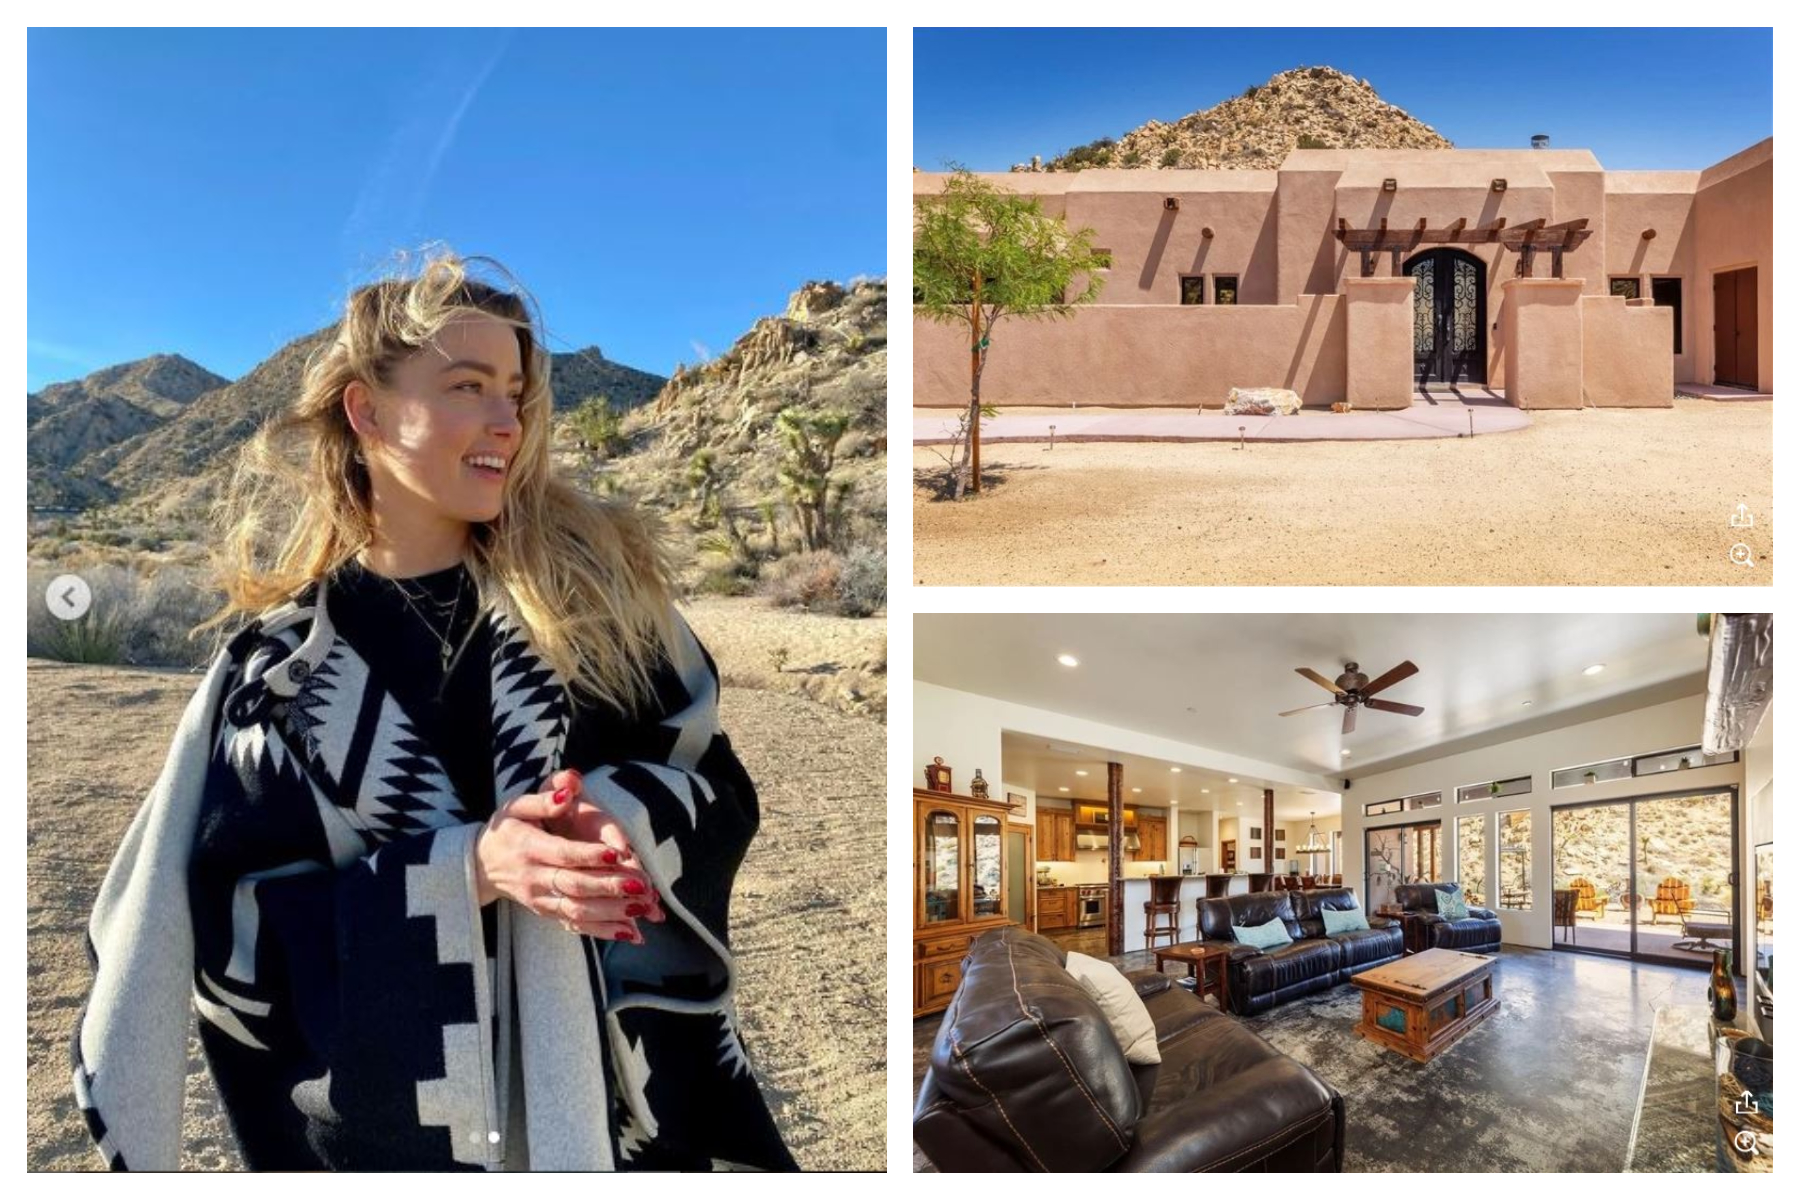 Amber Heard vive con su hija de un año en una casa en medio del desierto de California. (Foto Prensa Libre: Instagram @amberheard y www.dirt.com).